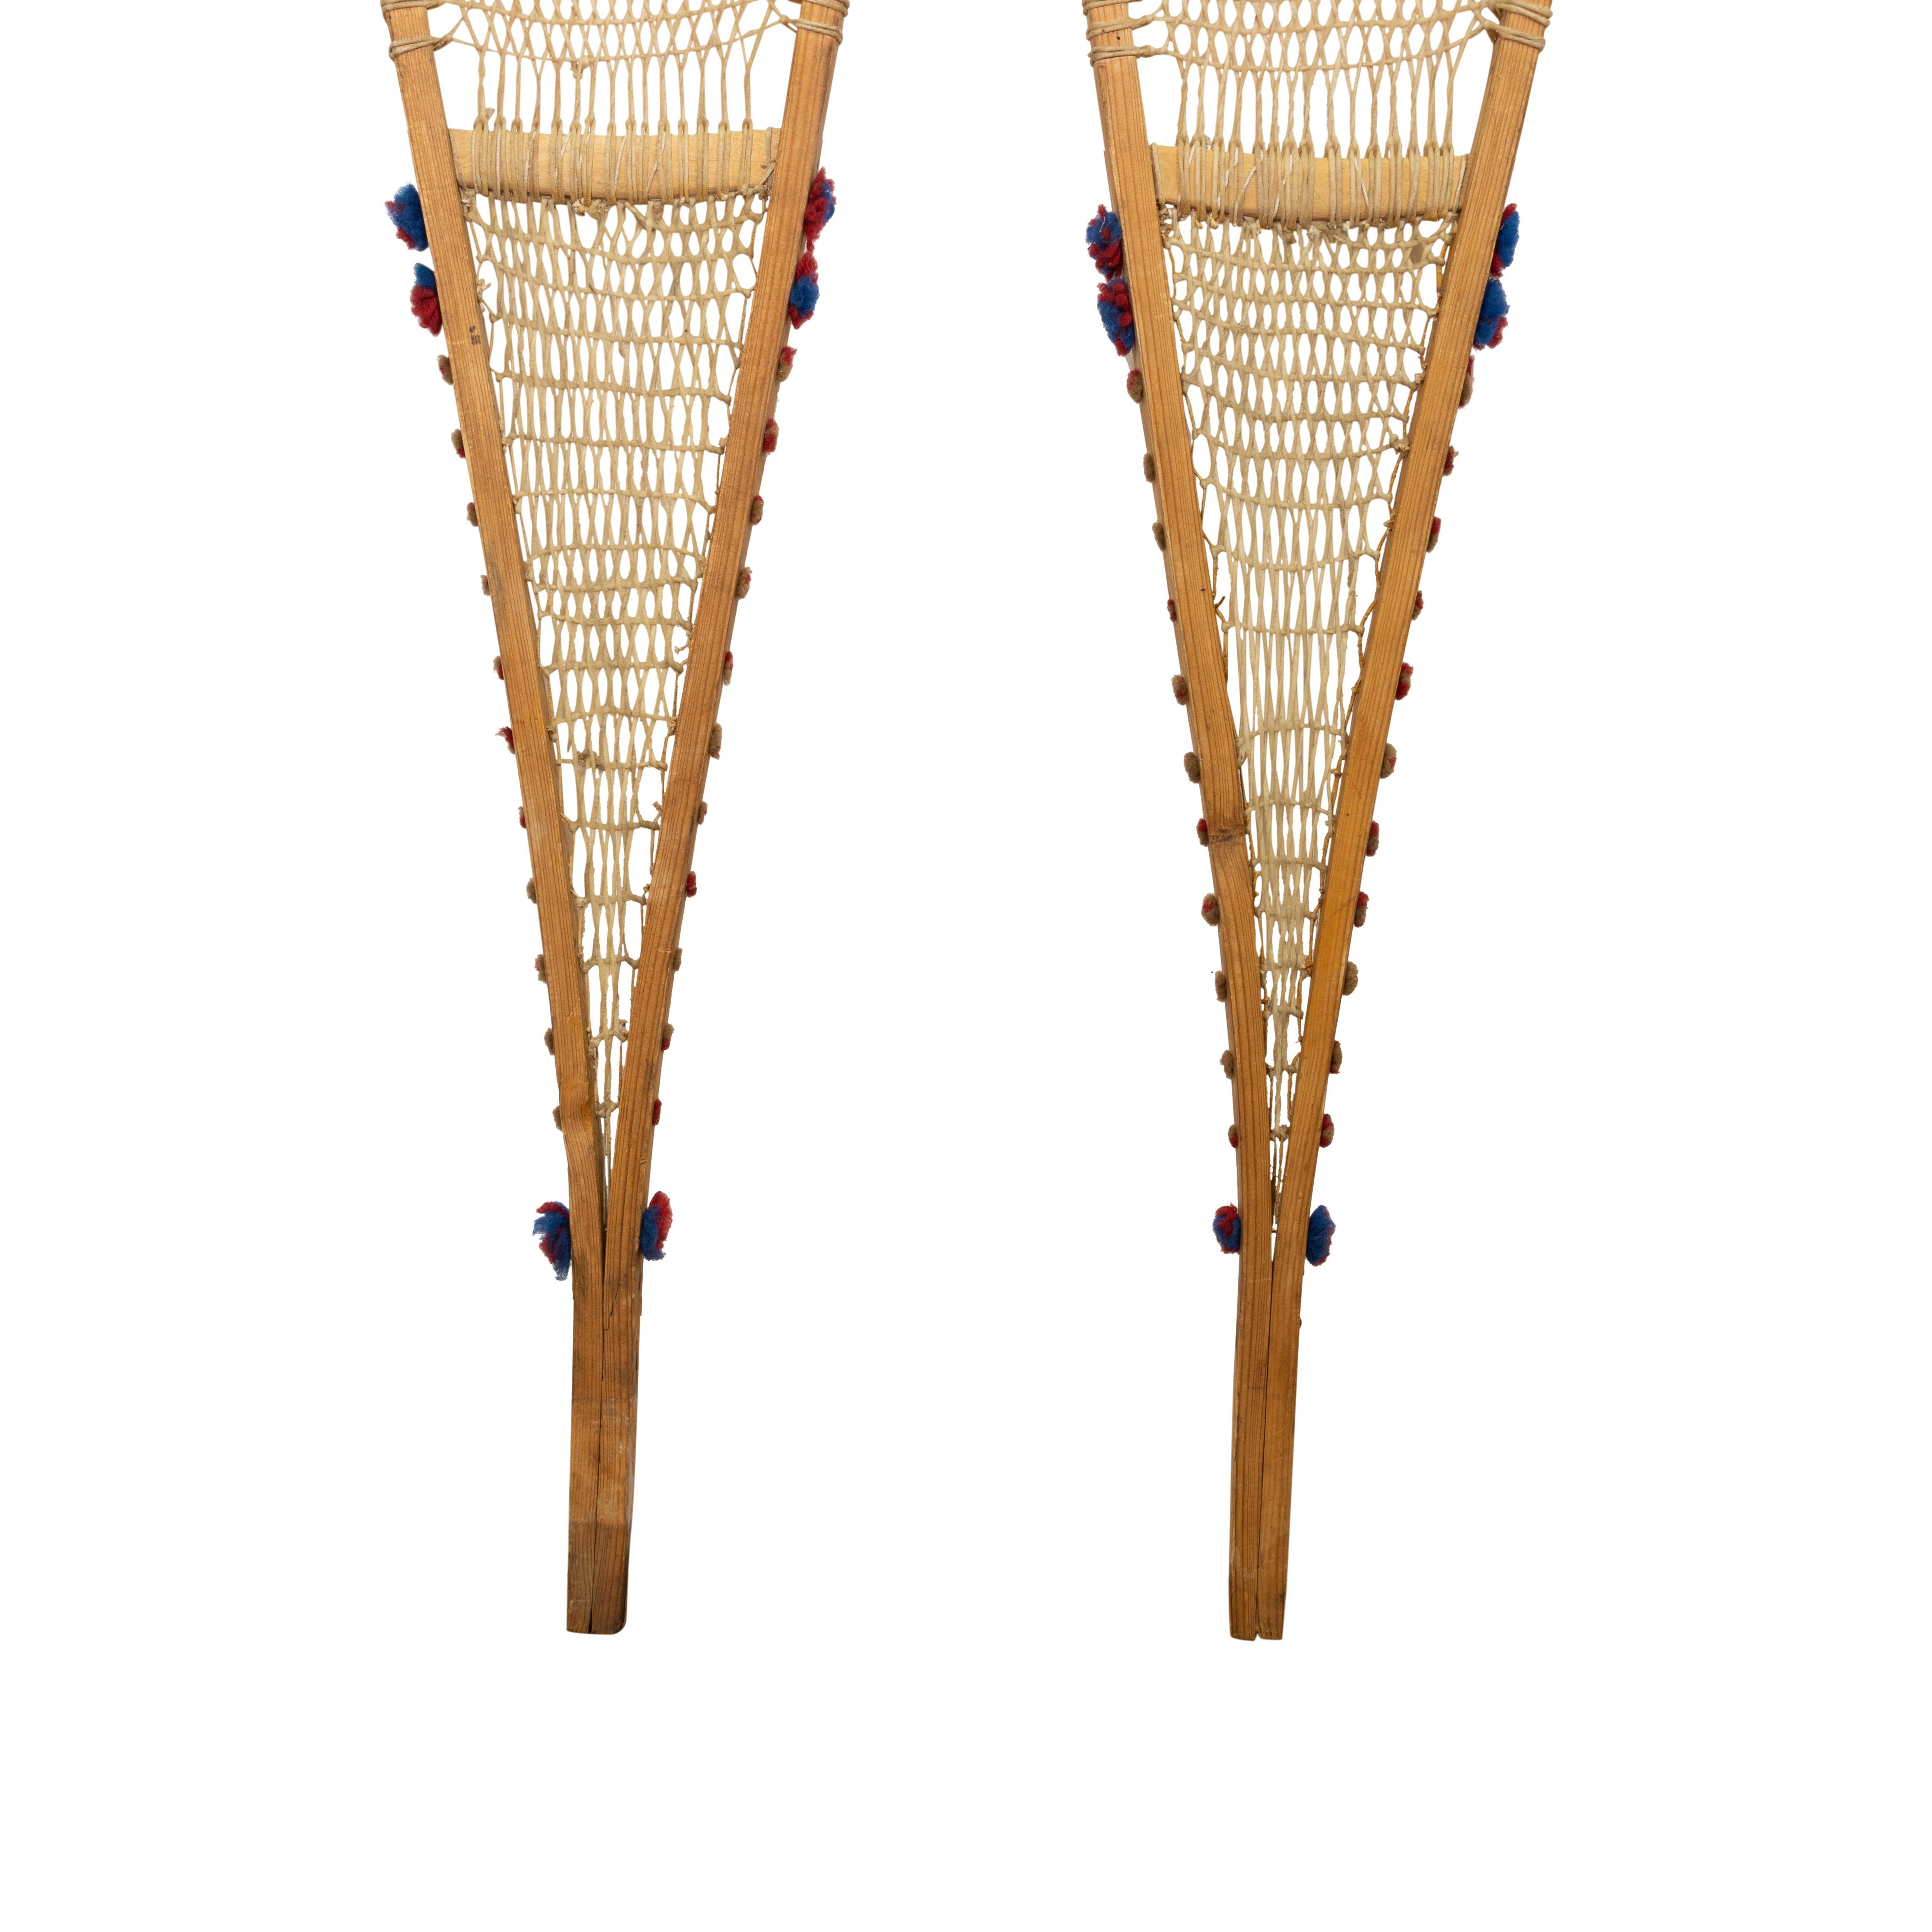 Von den Ojibwe-Indianern hergestellte und verwendete Schneeschuhe mit roten und blauen Wolltuffs. Gebraucht, aber leicht. 58